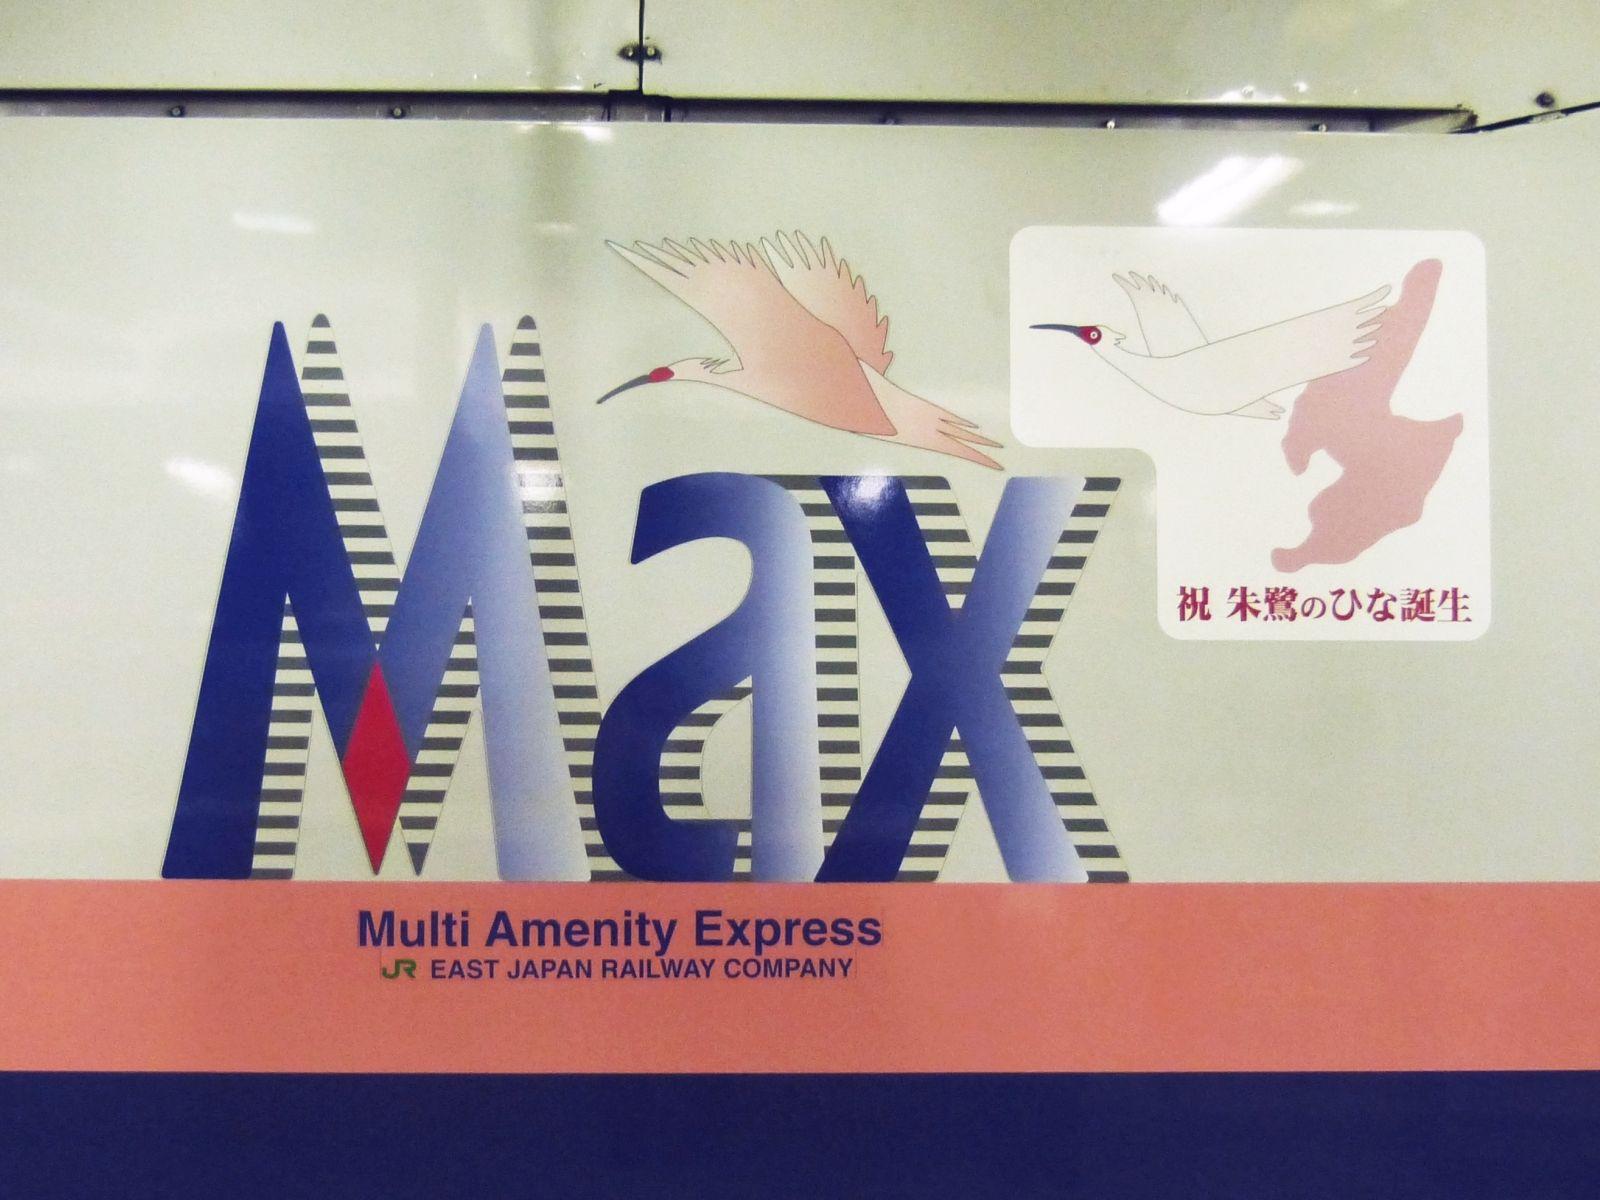 Toki Logo - Shinkansen E1 Max Toki logo